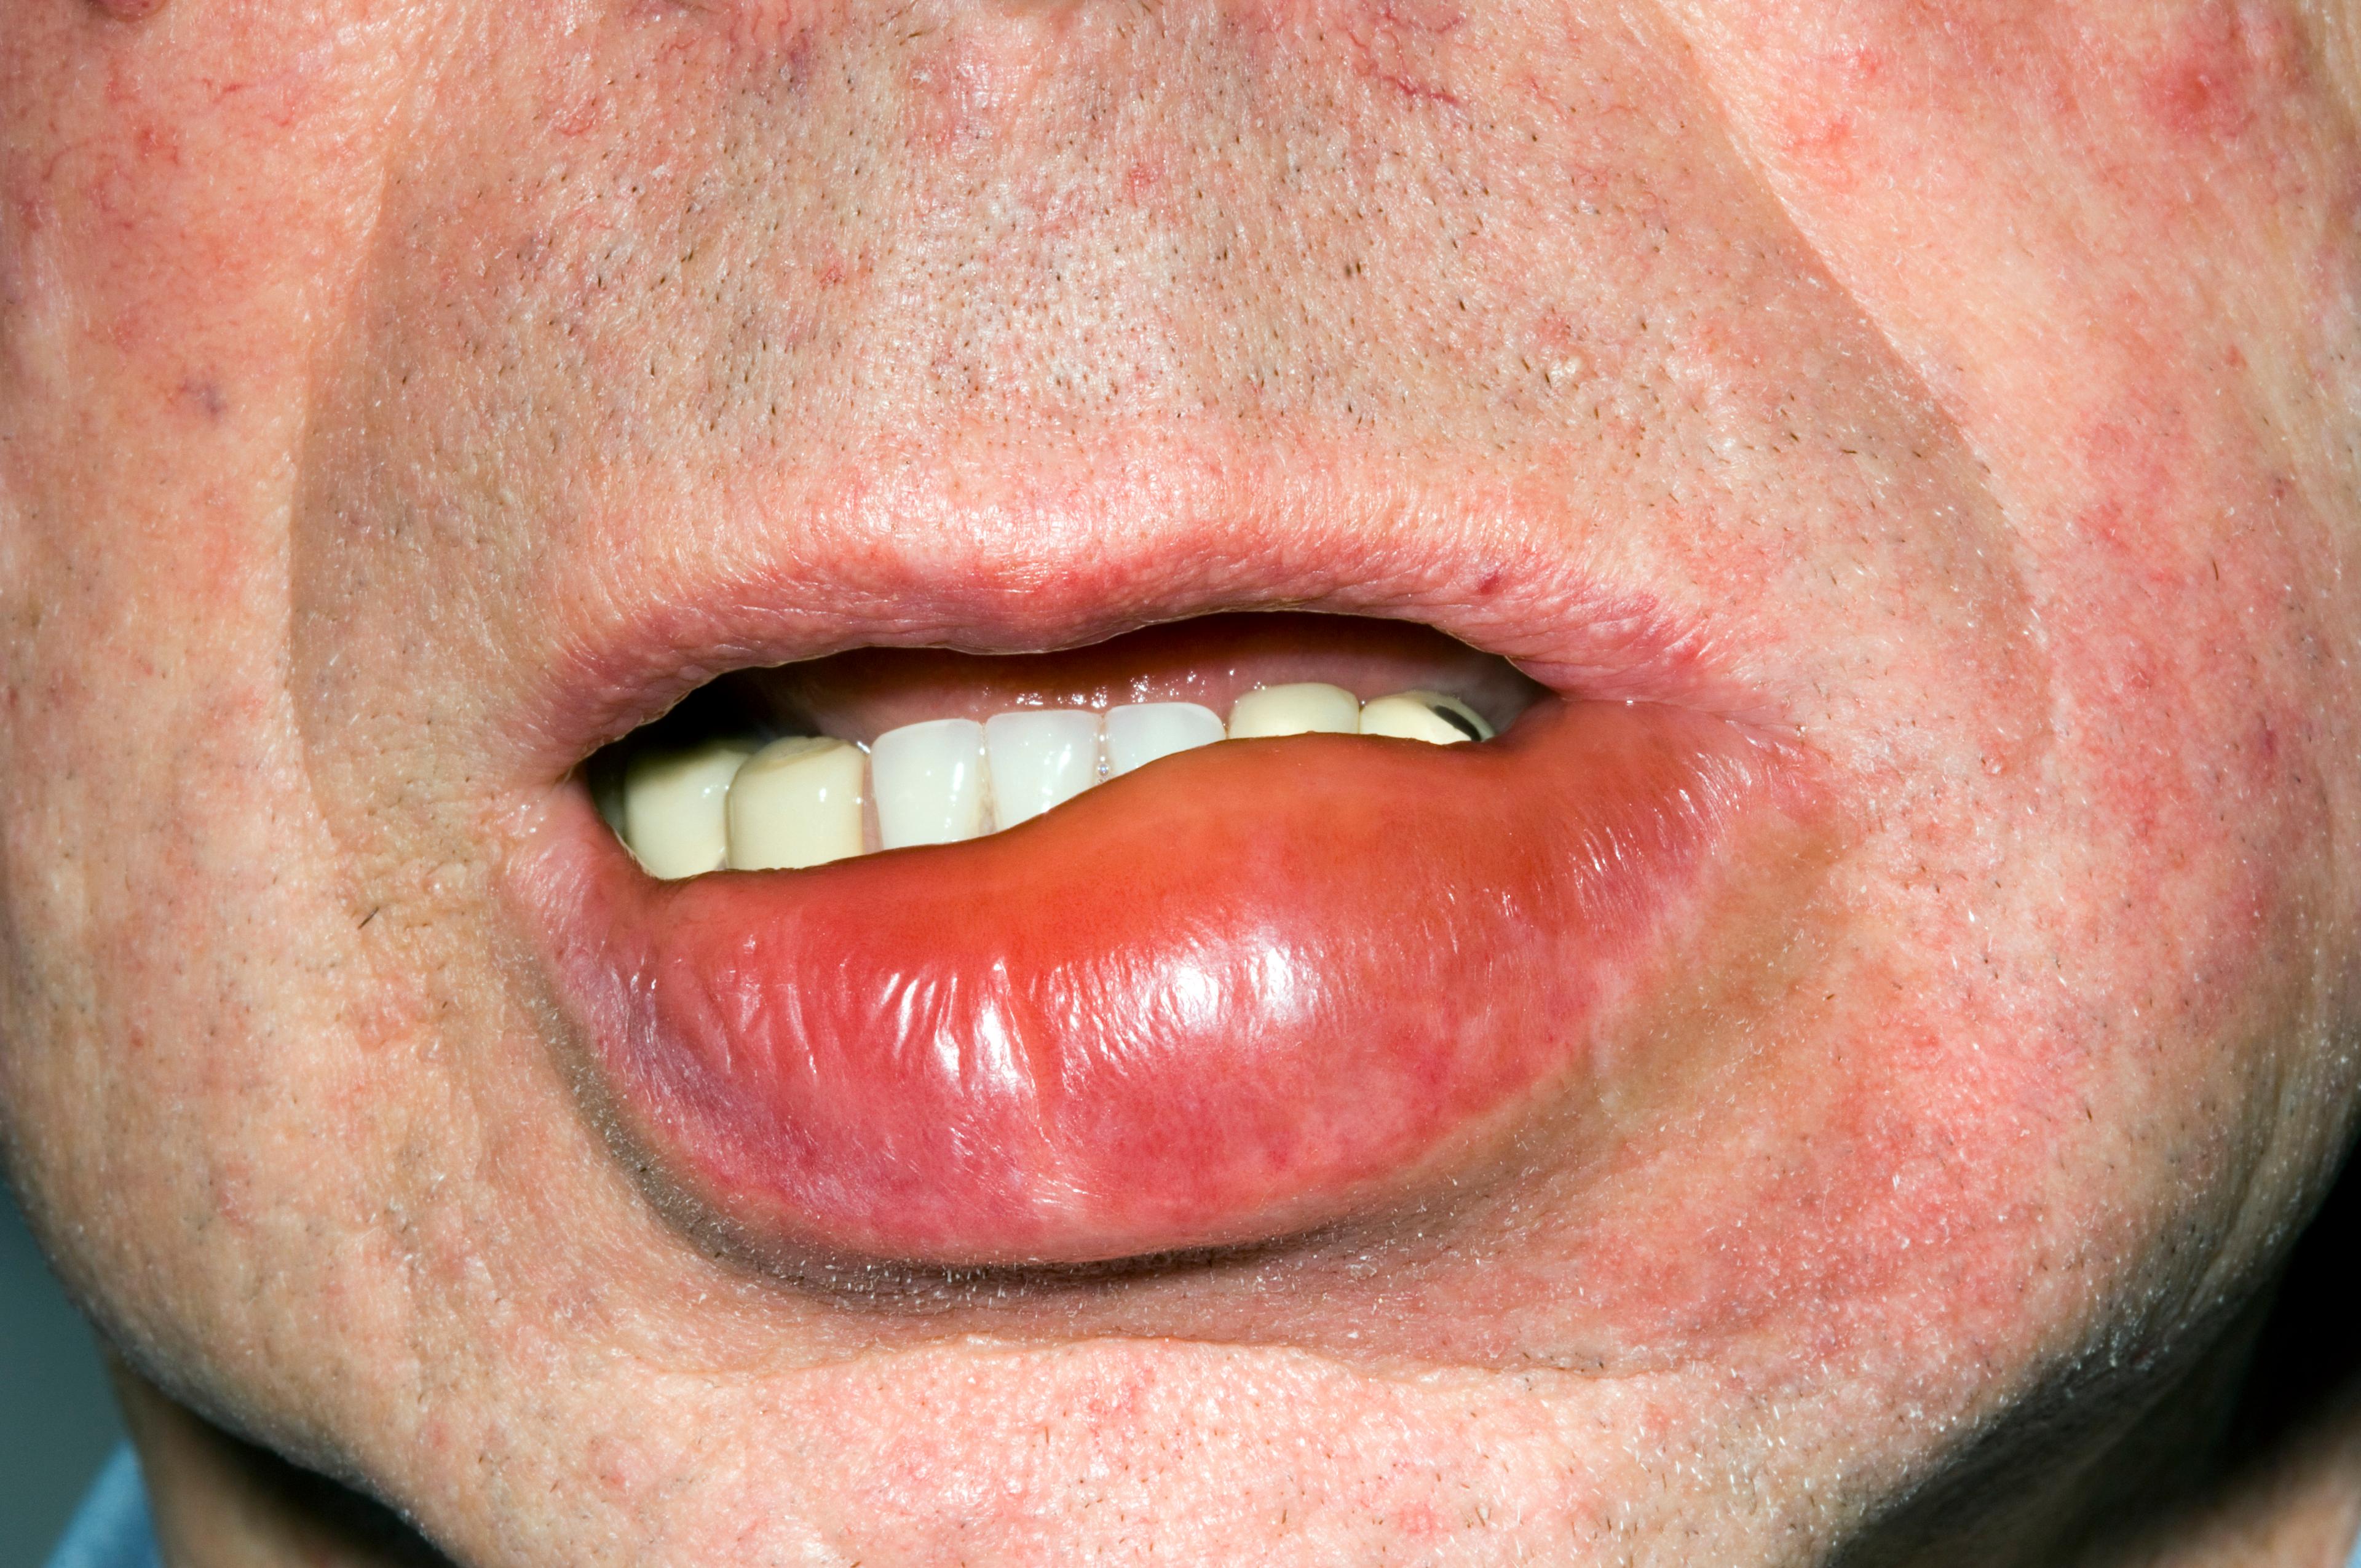 口唇の血管性浮腫